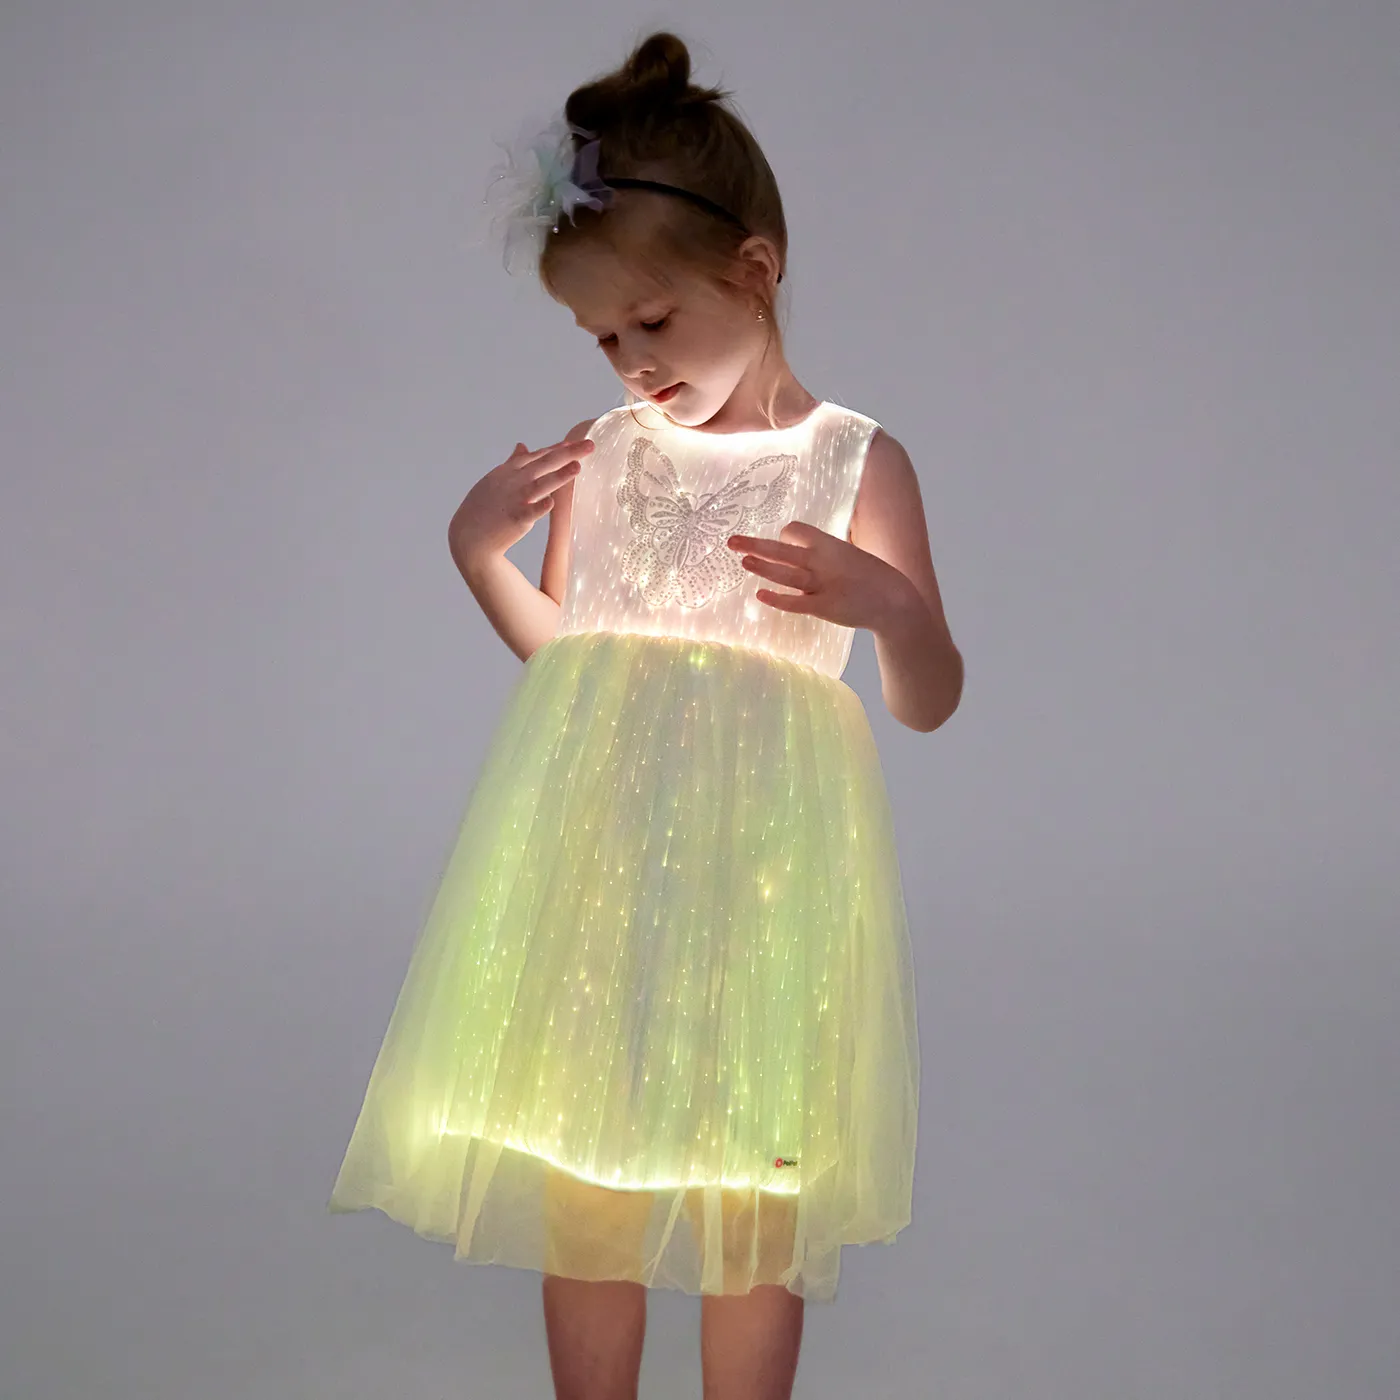 Go-Glow 亮亮白色派對連衣裙與亮片蝴蝶包括控制器 （內置電池）